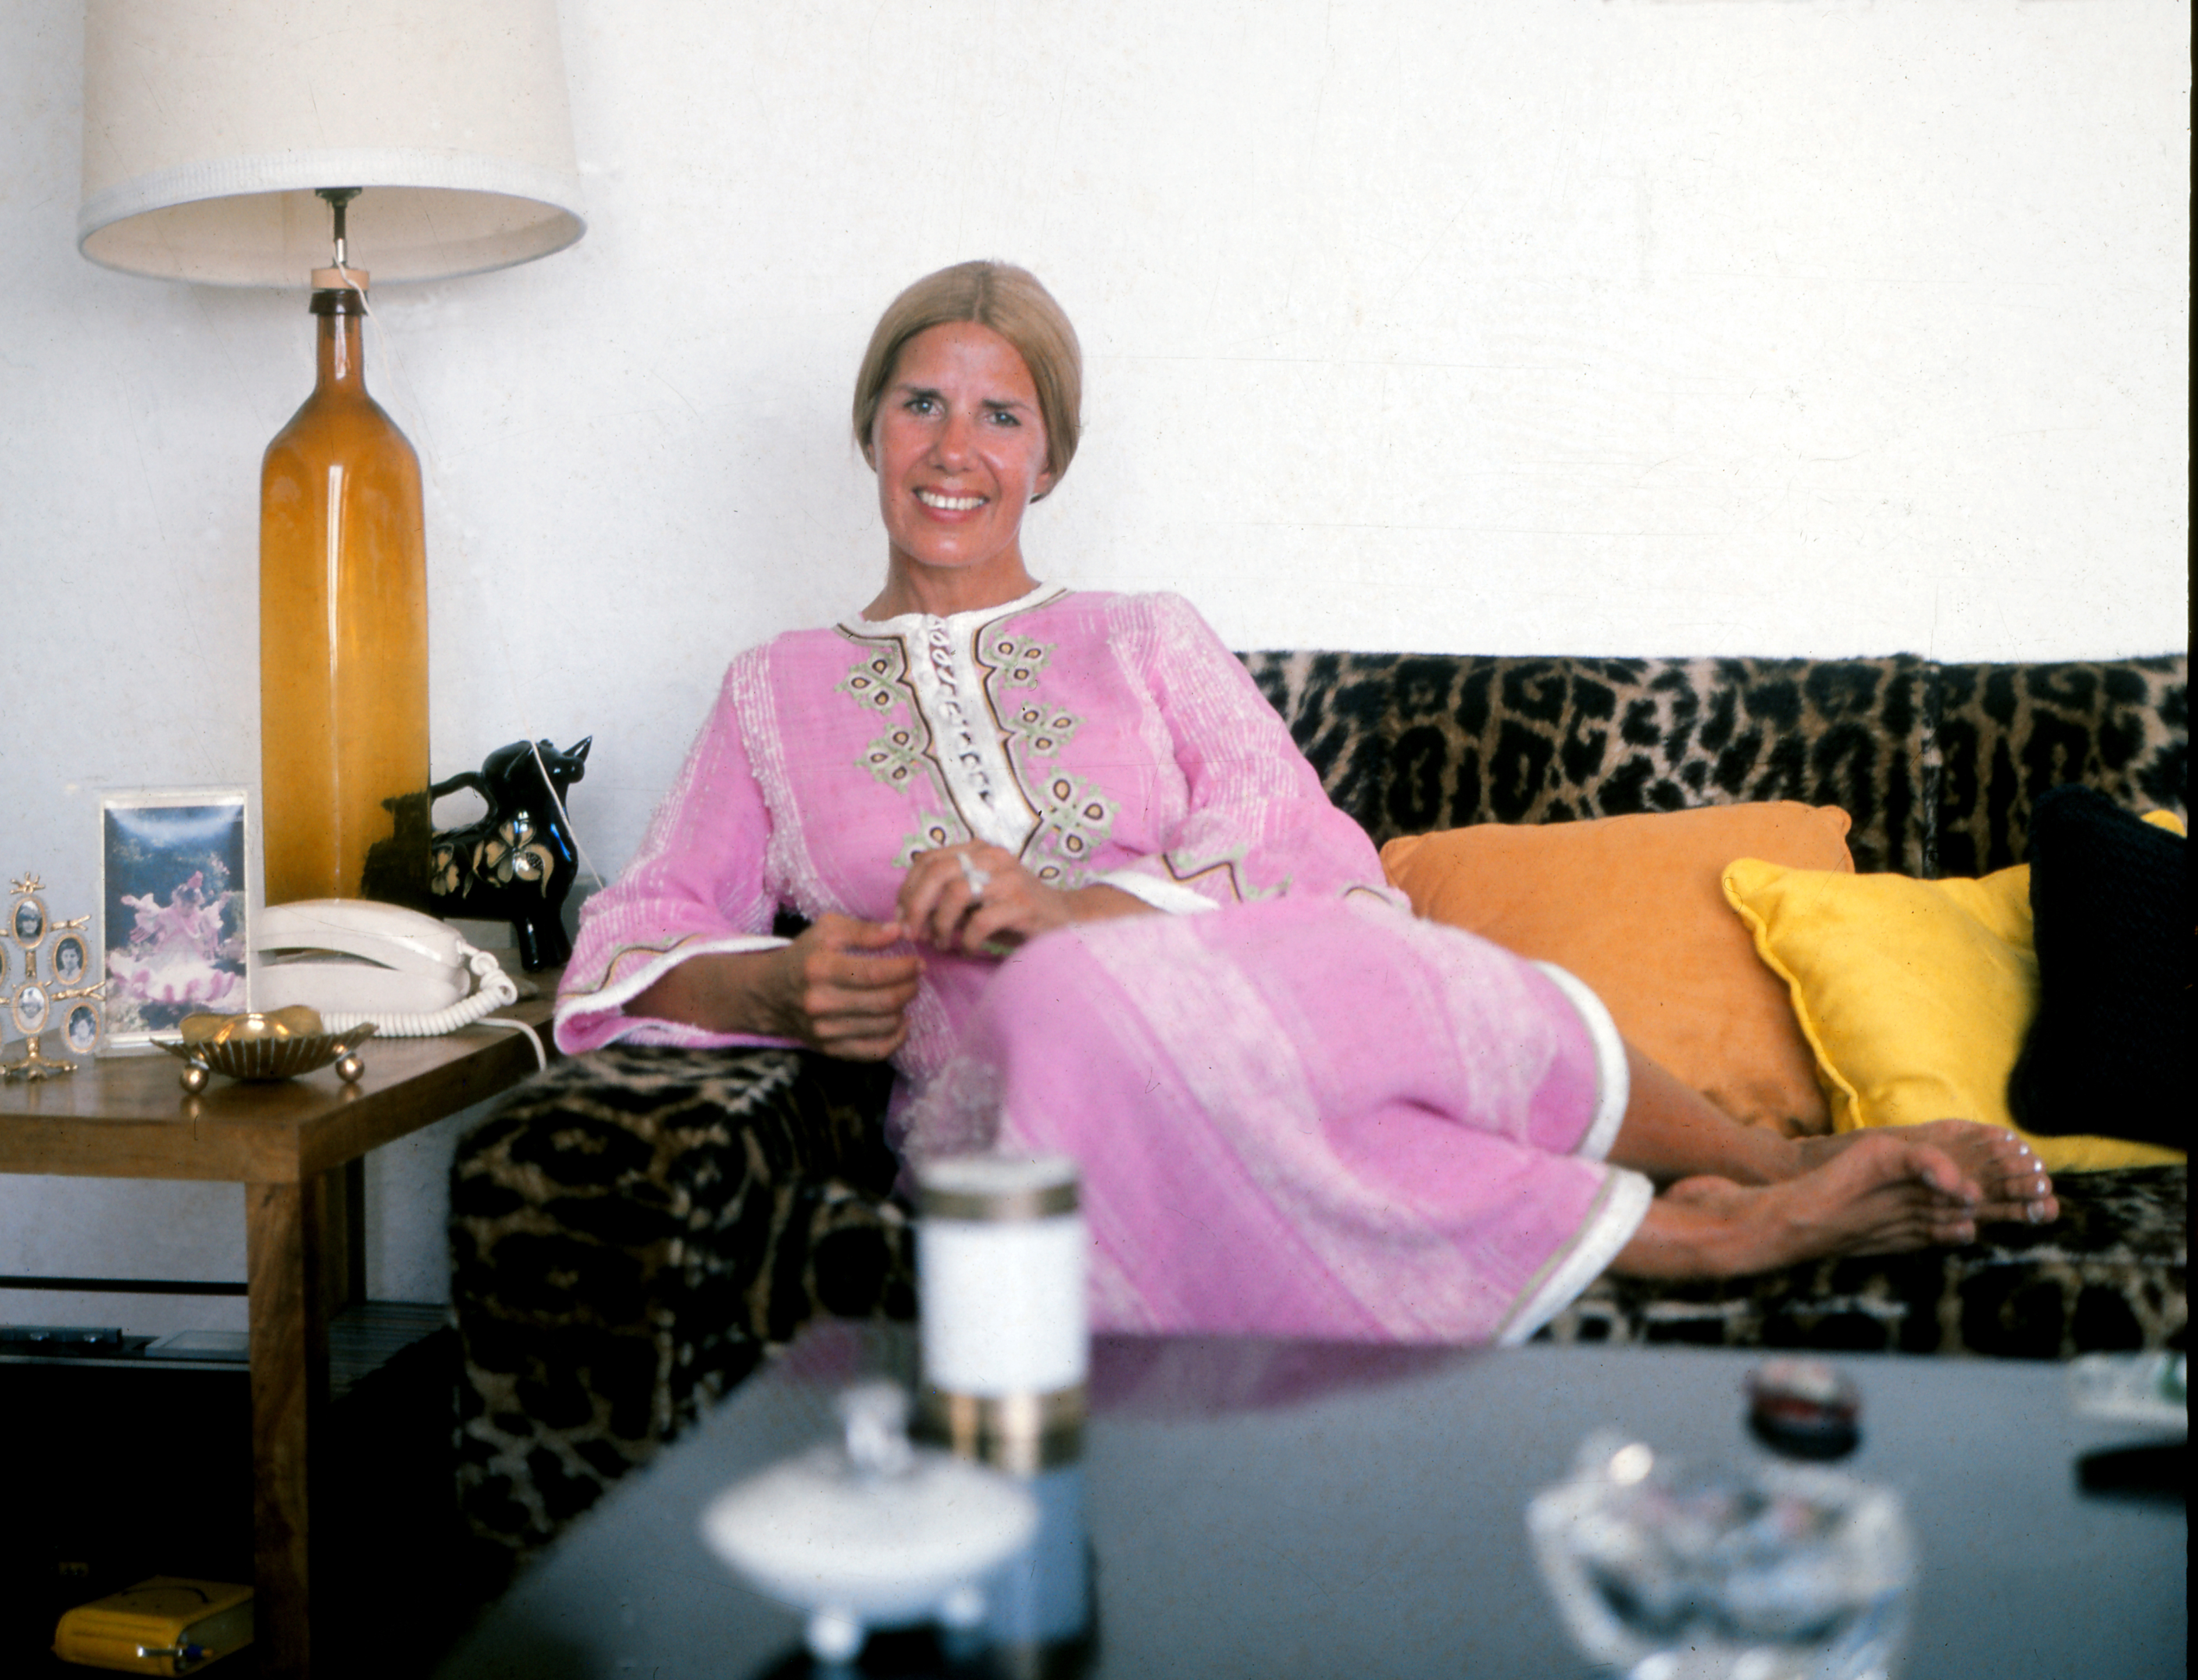 La duchesse d'Alba, Maria del Rosario Cayetana Fitz-James Stuart photographiée à Malaga, en Espagne, le 11 septembre 1973 | Source : Getty Images